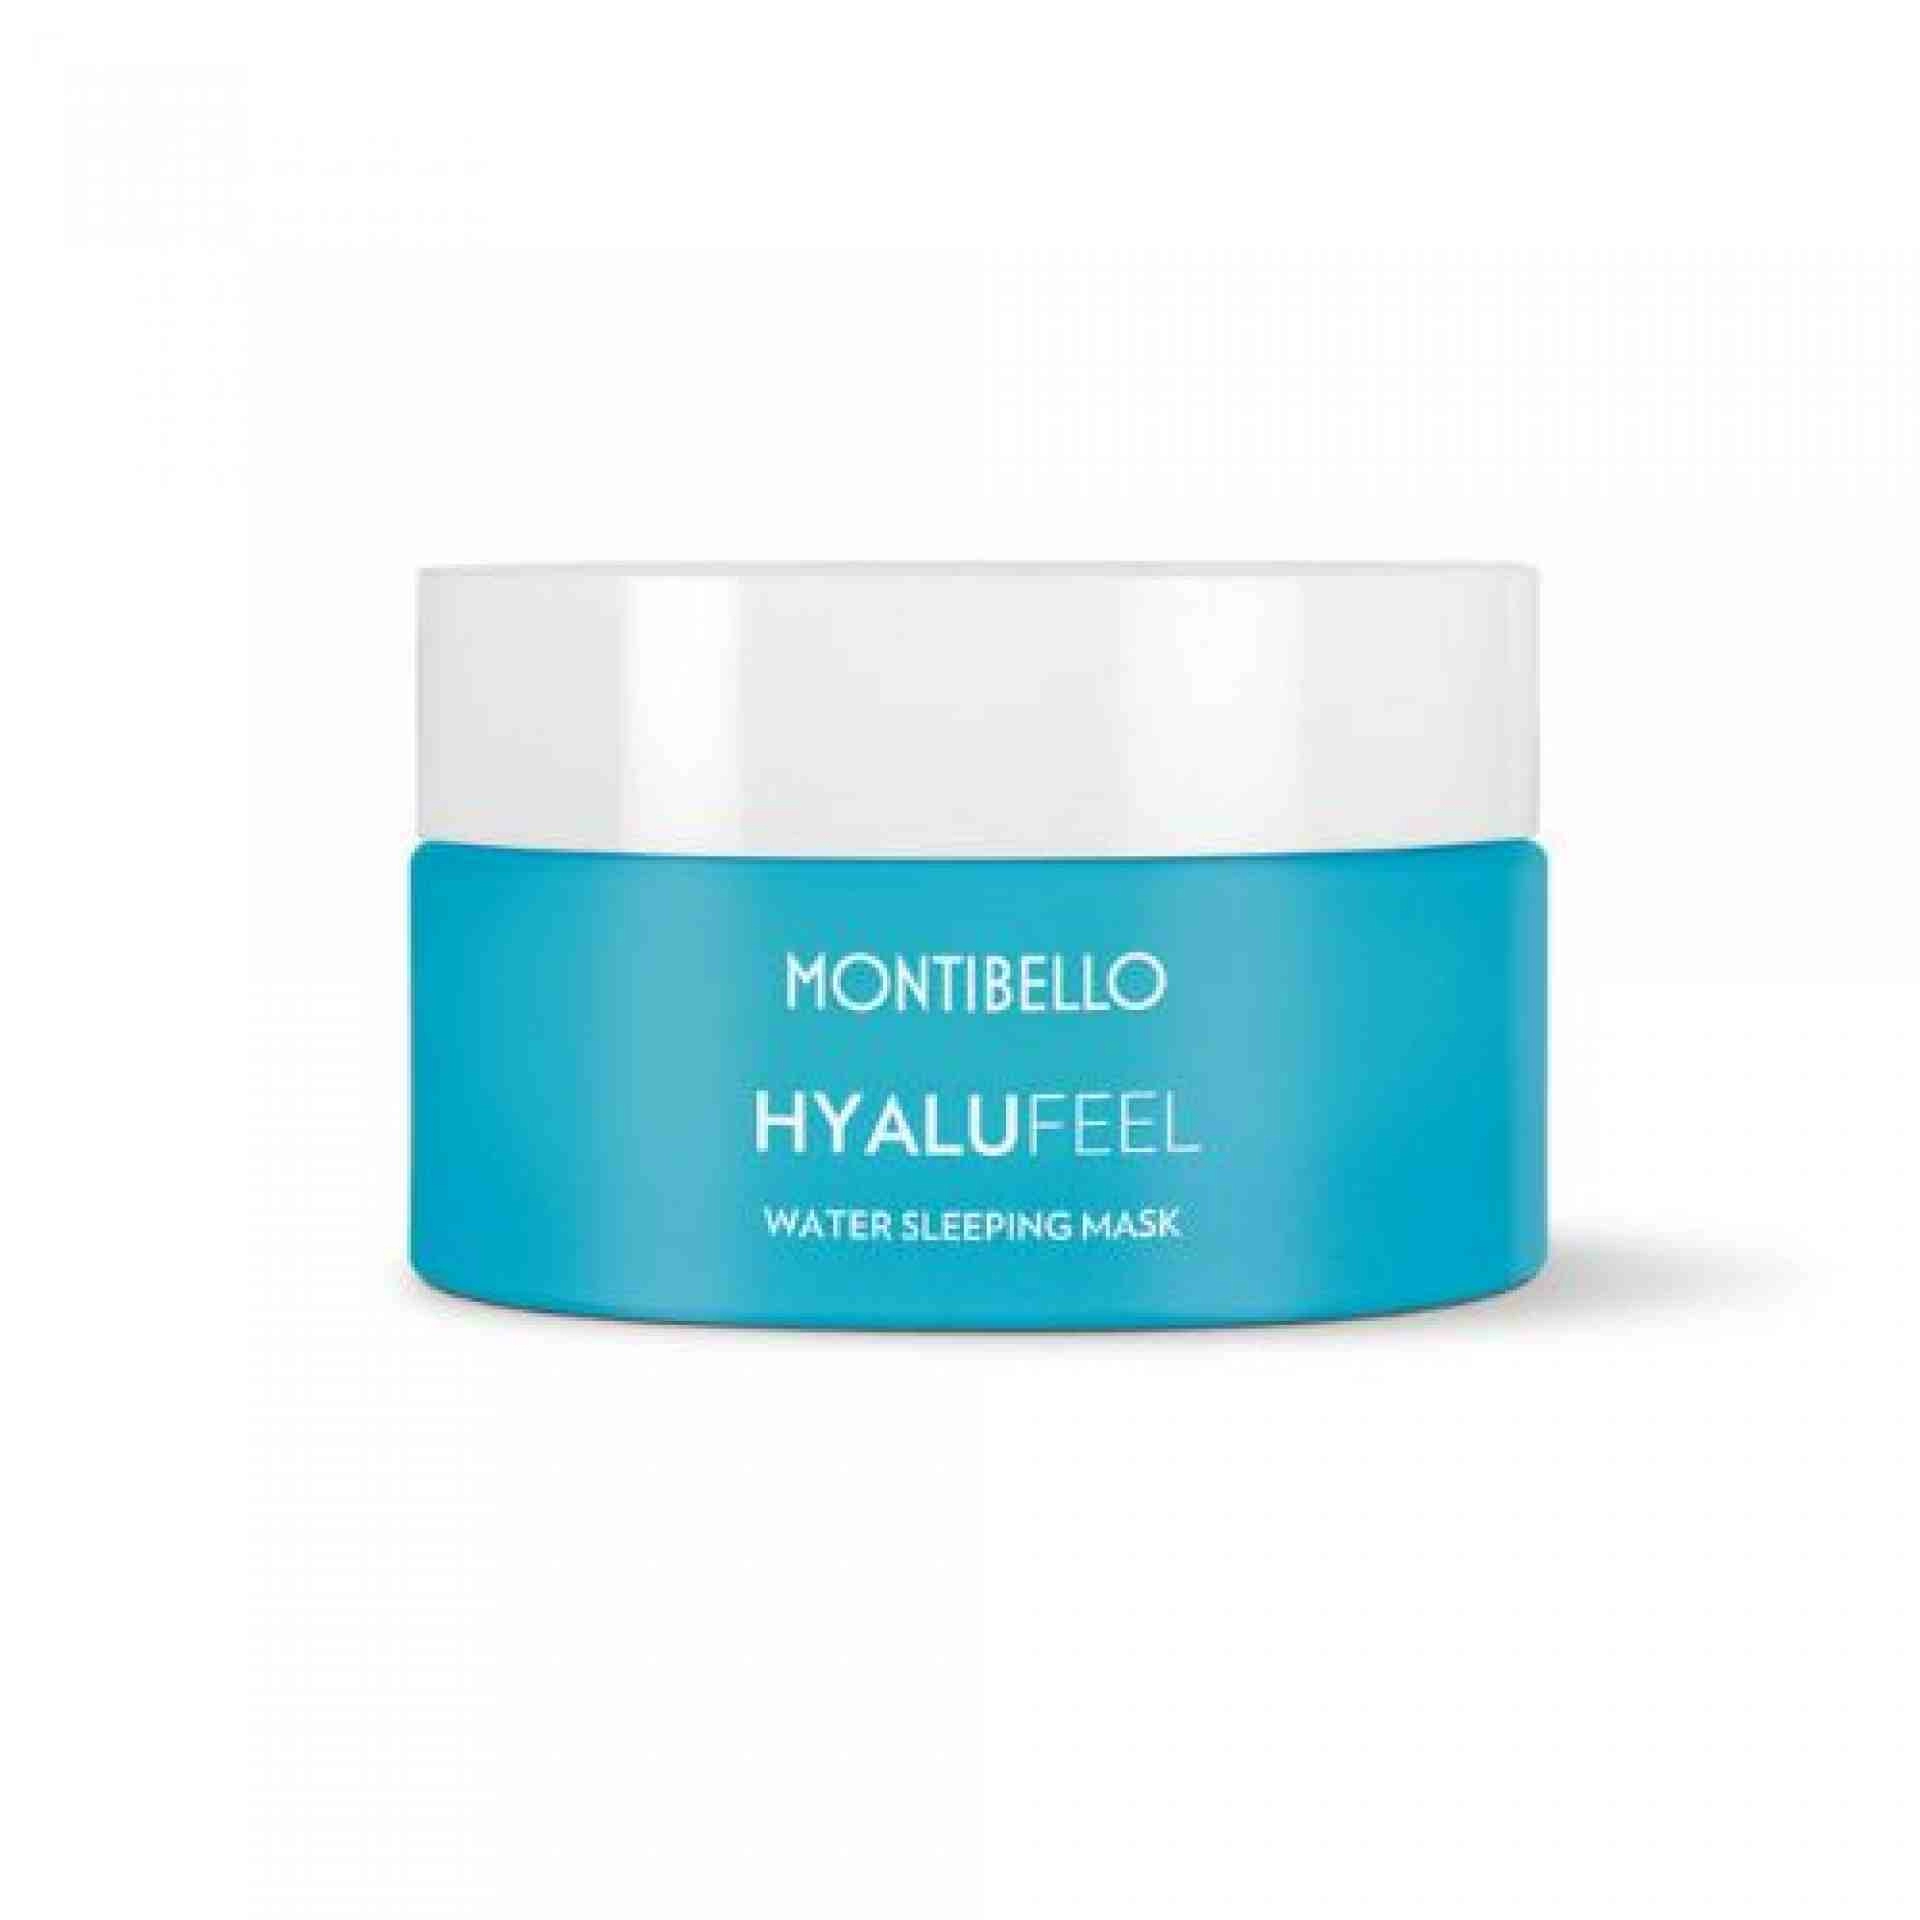 Water sleeping mask | Mascarilla-gel de noche 50ml - Hyalu Feel - Montibello ®